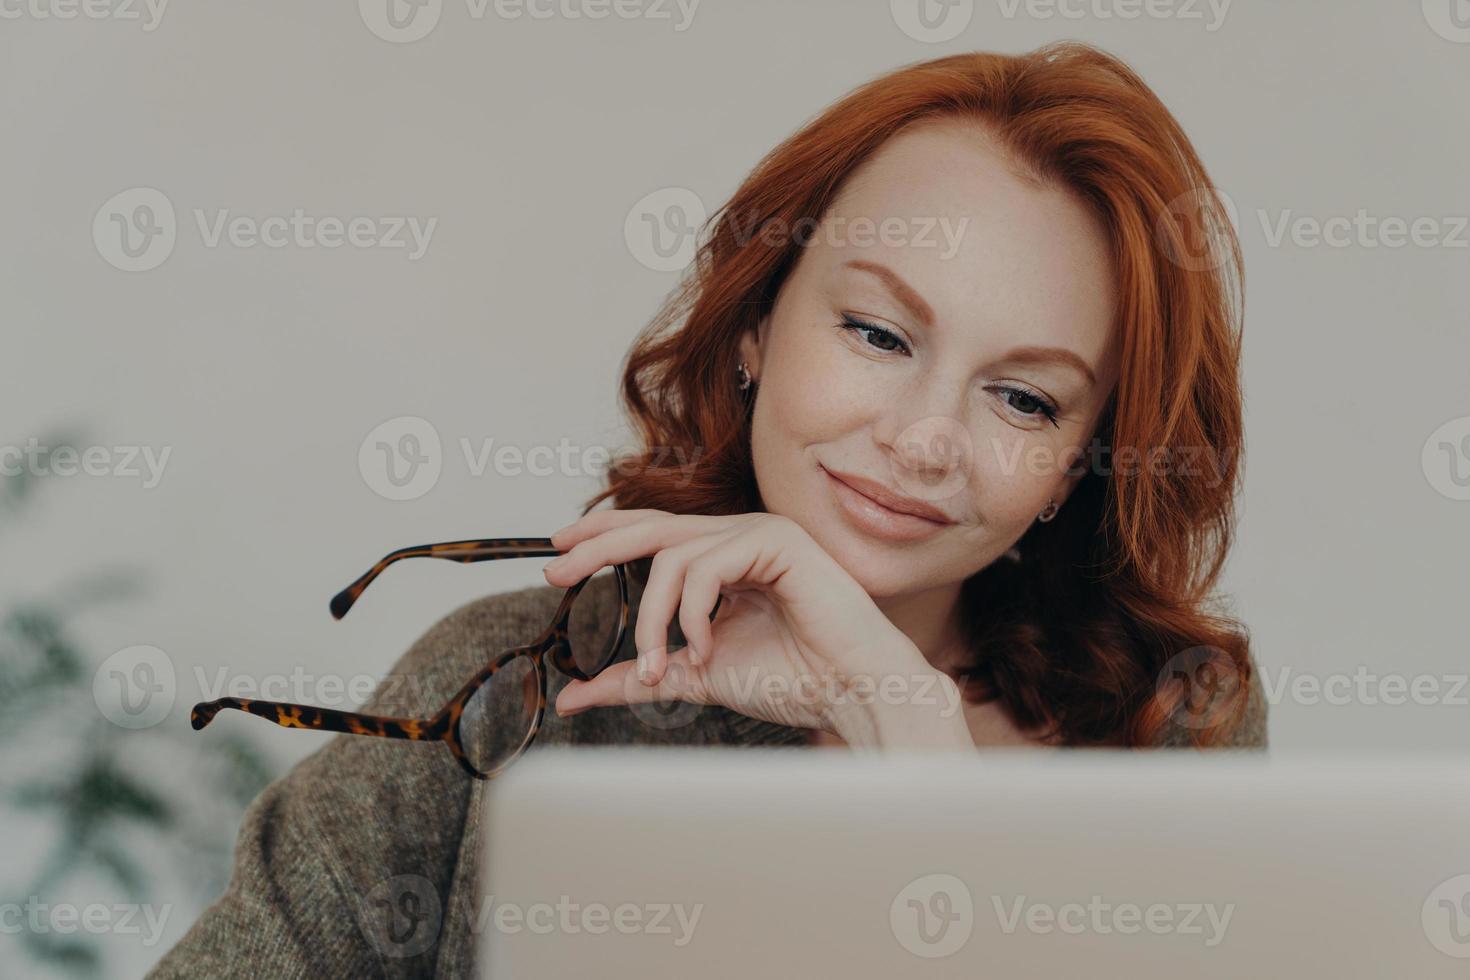 foto van roodharige vrouw zet bril af, geniet van vrije tijd voor e-learning, gefocust op monitor van laptopcomputer, doet afstandswerk. vrouwelijke student bereidt zich voor op examens, gebruikt moderne technologieën